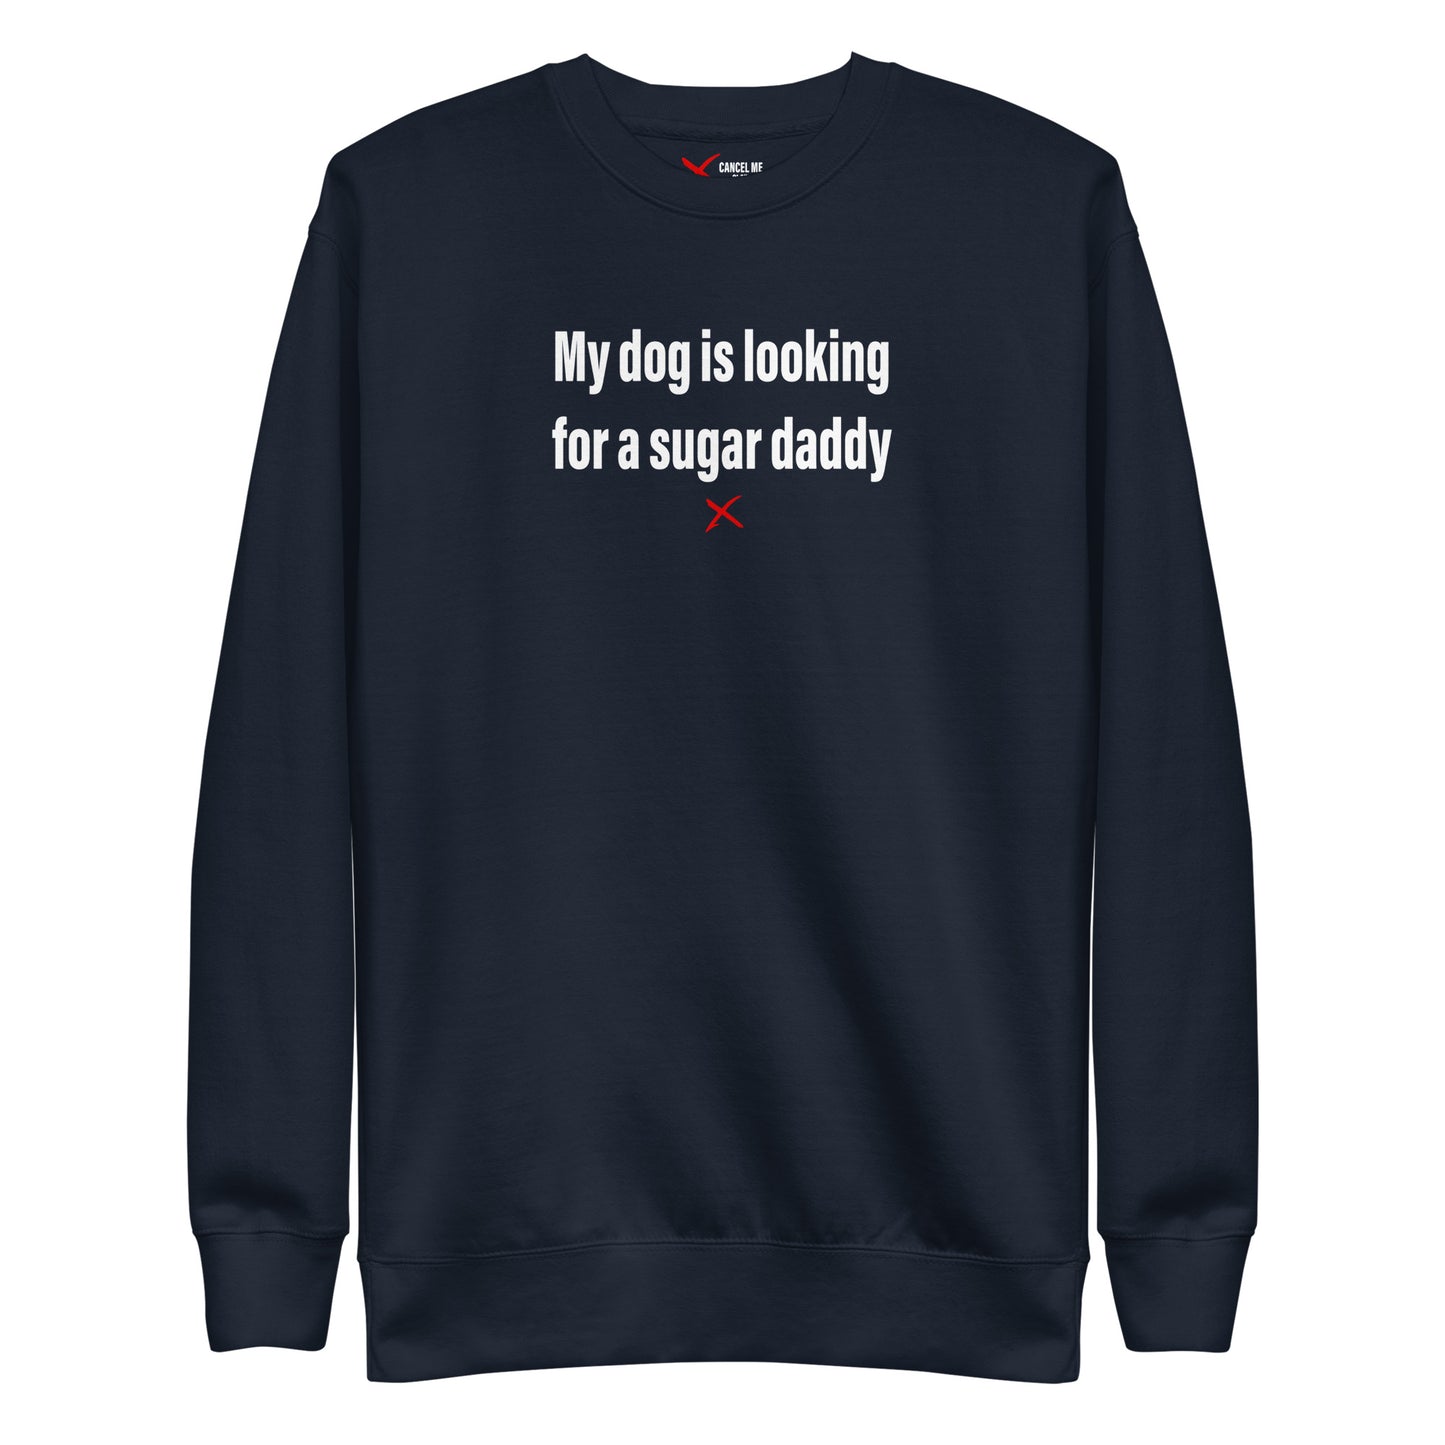 My dog is looking for a sugar daddy - Sweatshirt